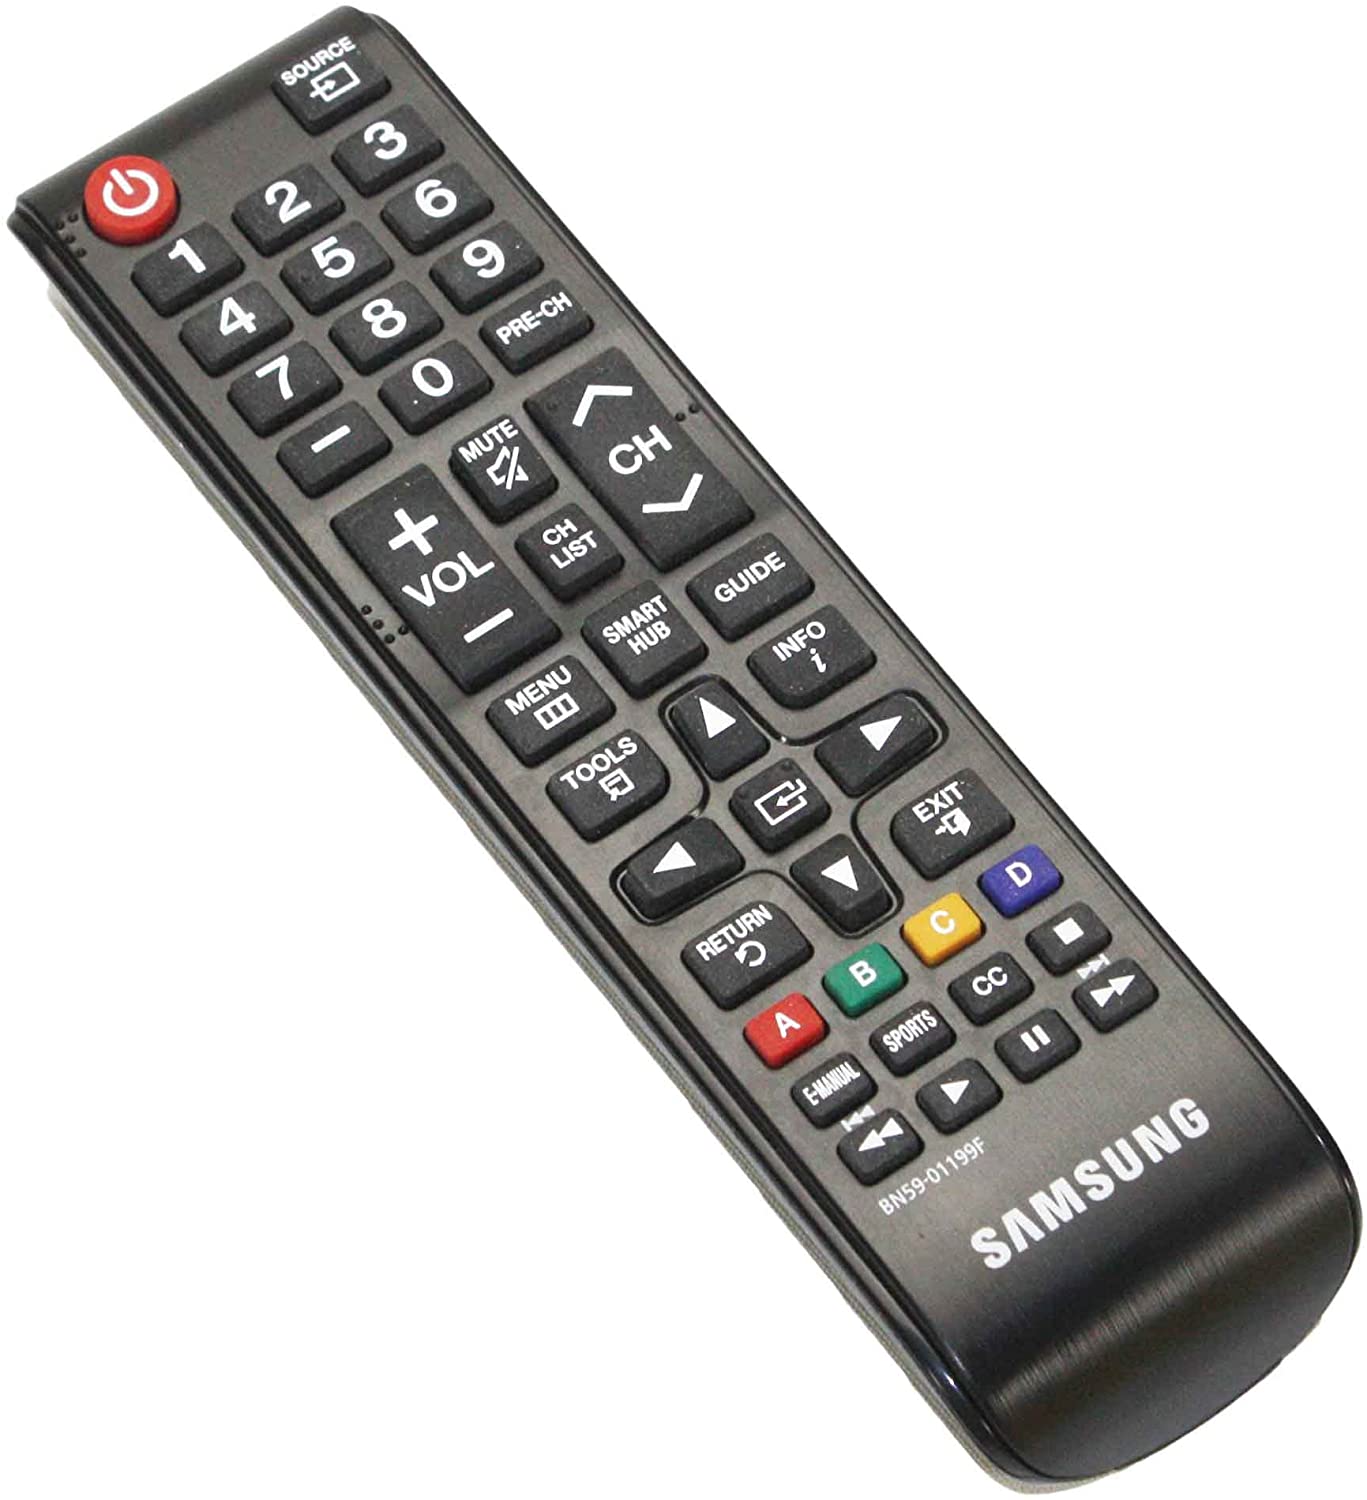 Samsung universal remote codes